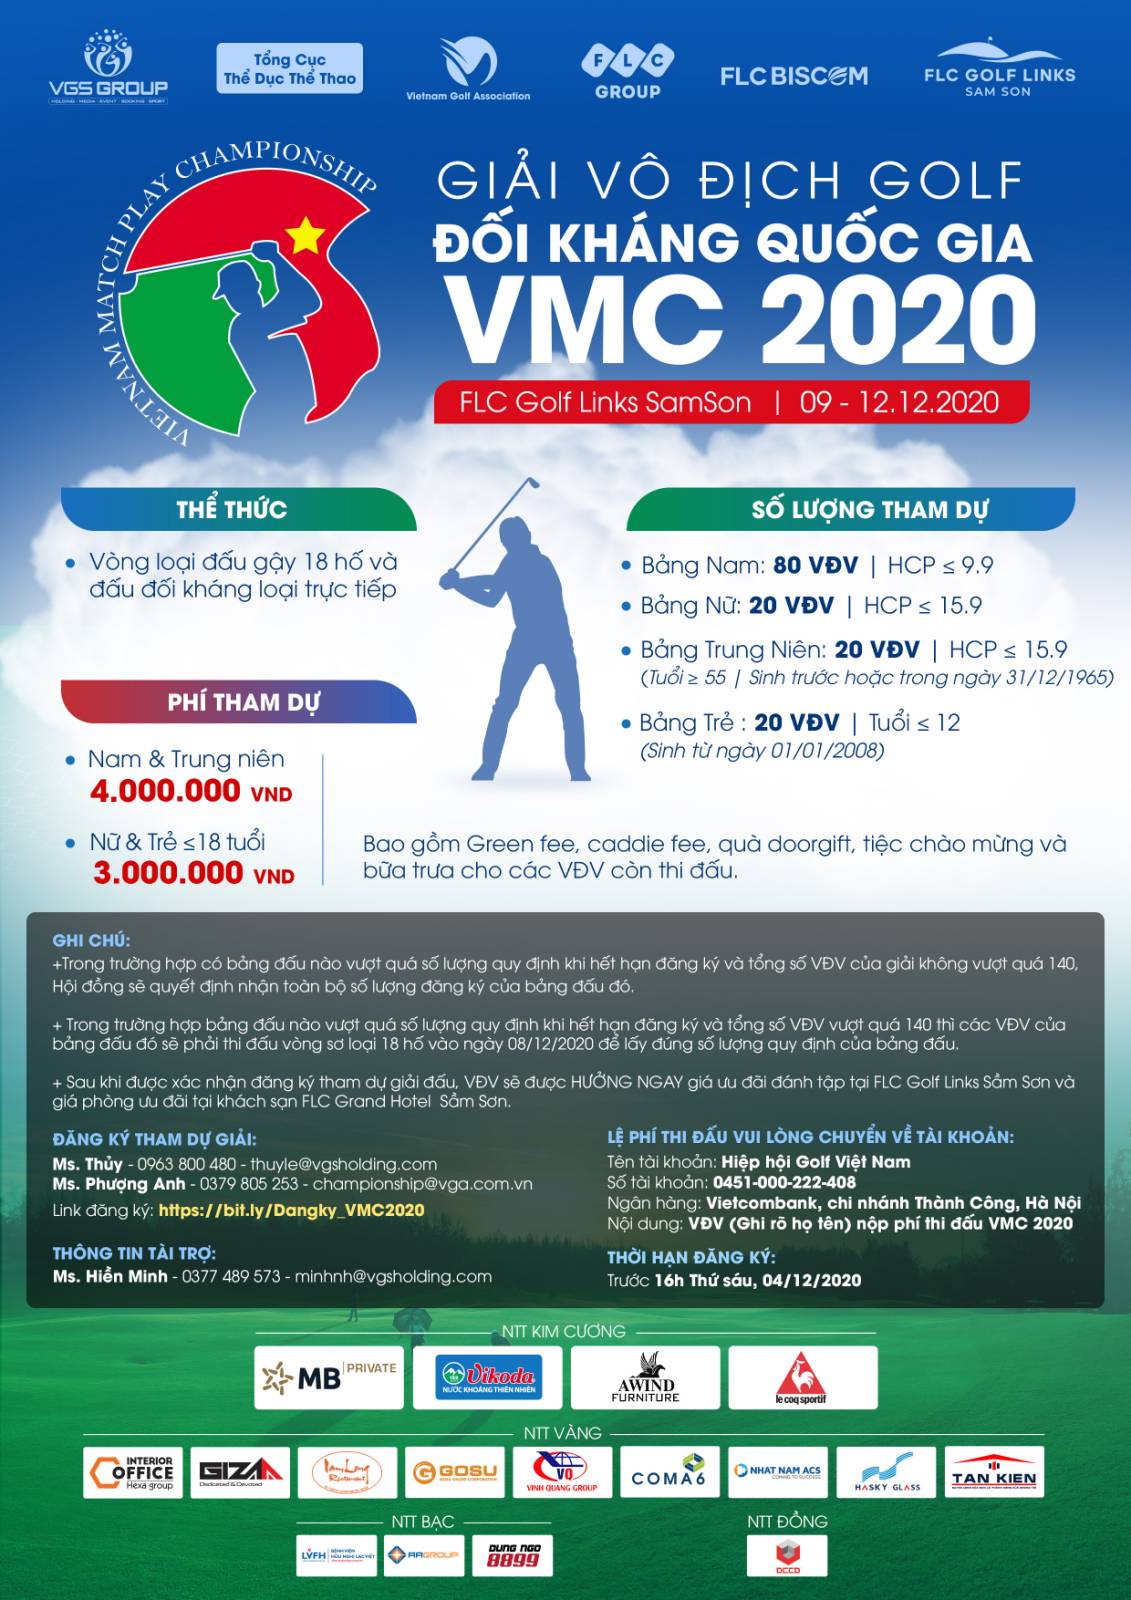 VMC 2020 diễn ra tại FLC Golf Links SamSon vào tháng 12